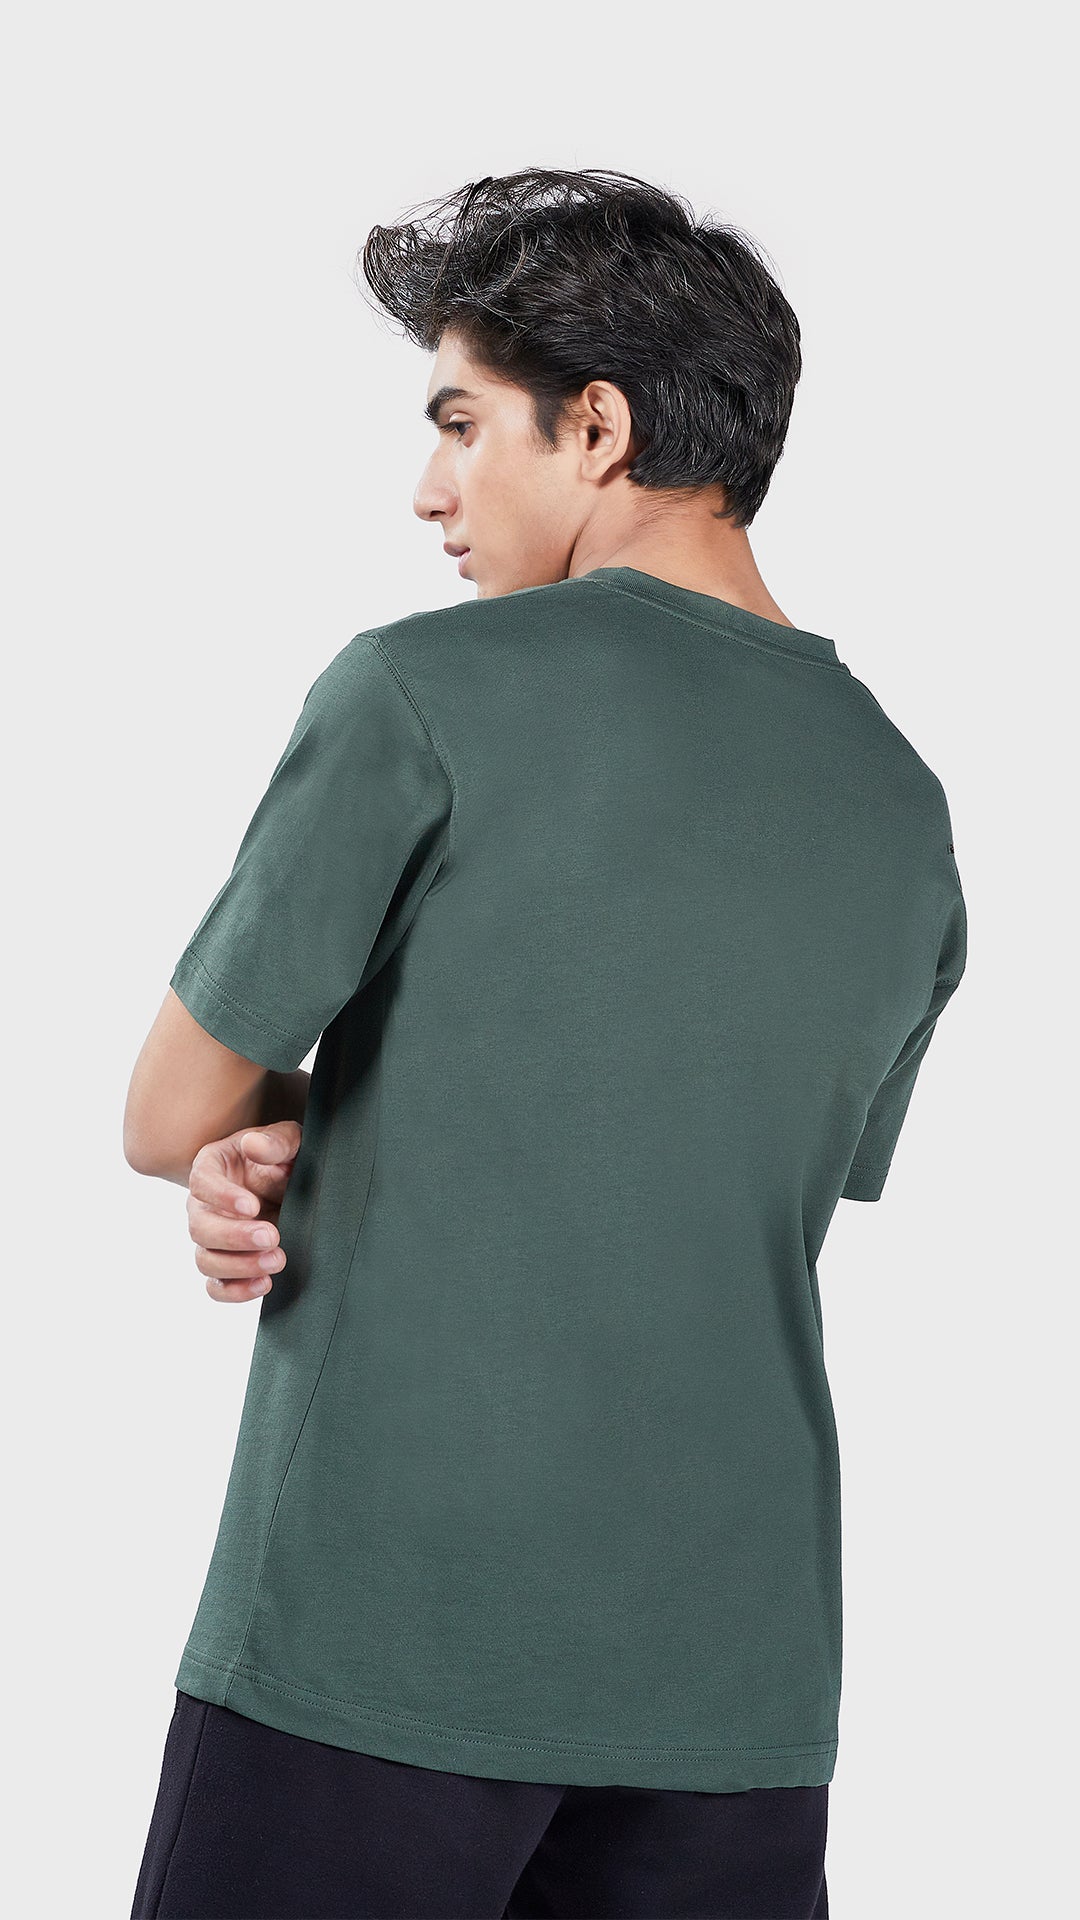 Men's Basic V Half Sleeves T-Shirt